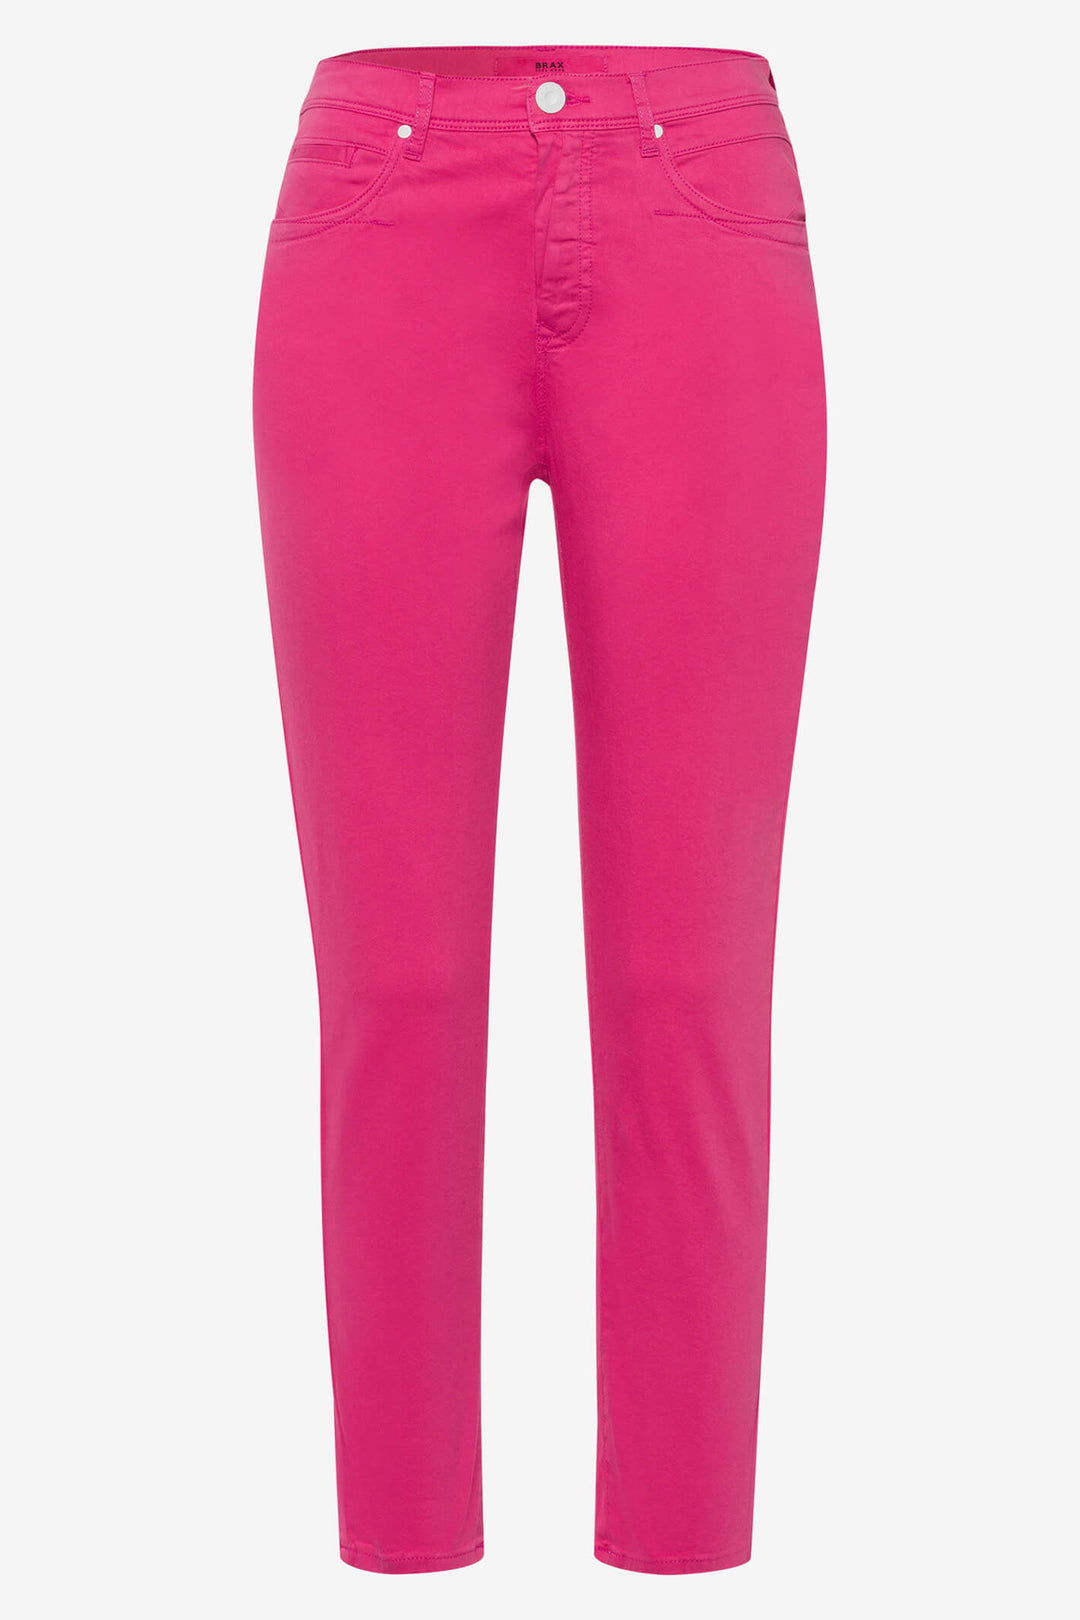 Pink Jeans For Women: Pink Denim Designer Jeans